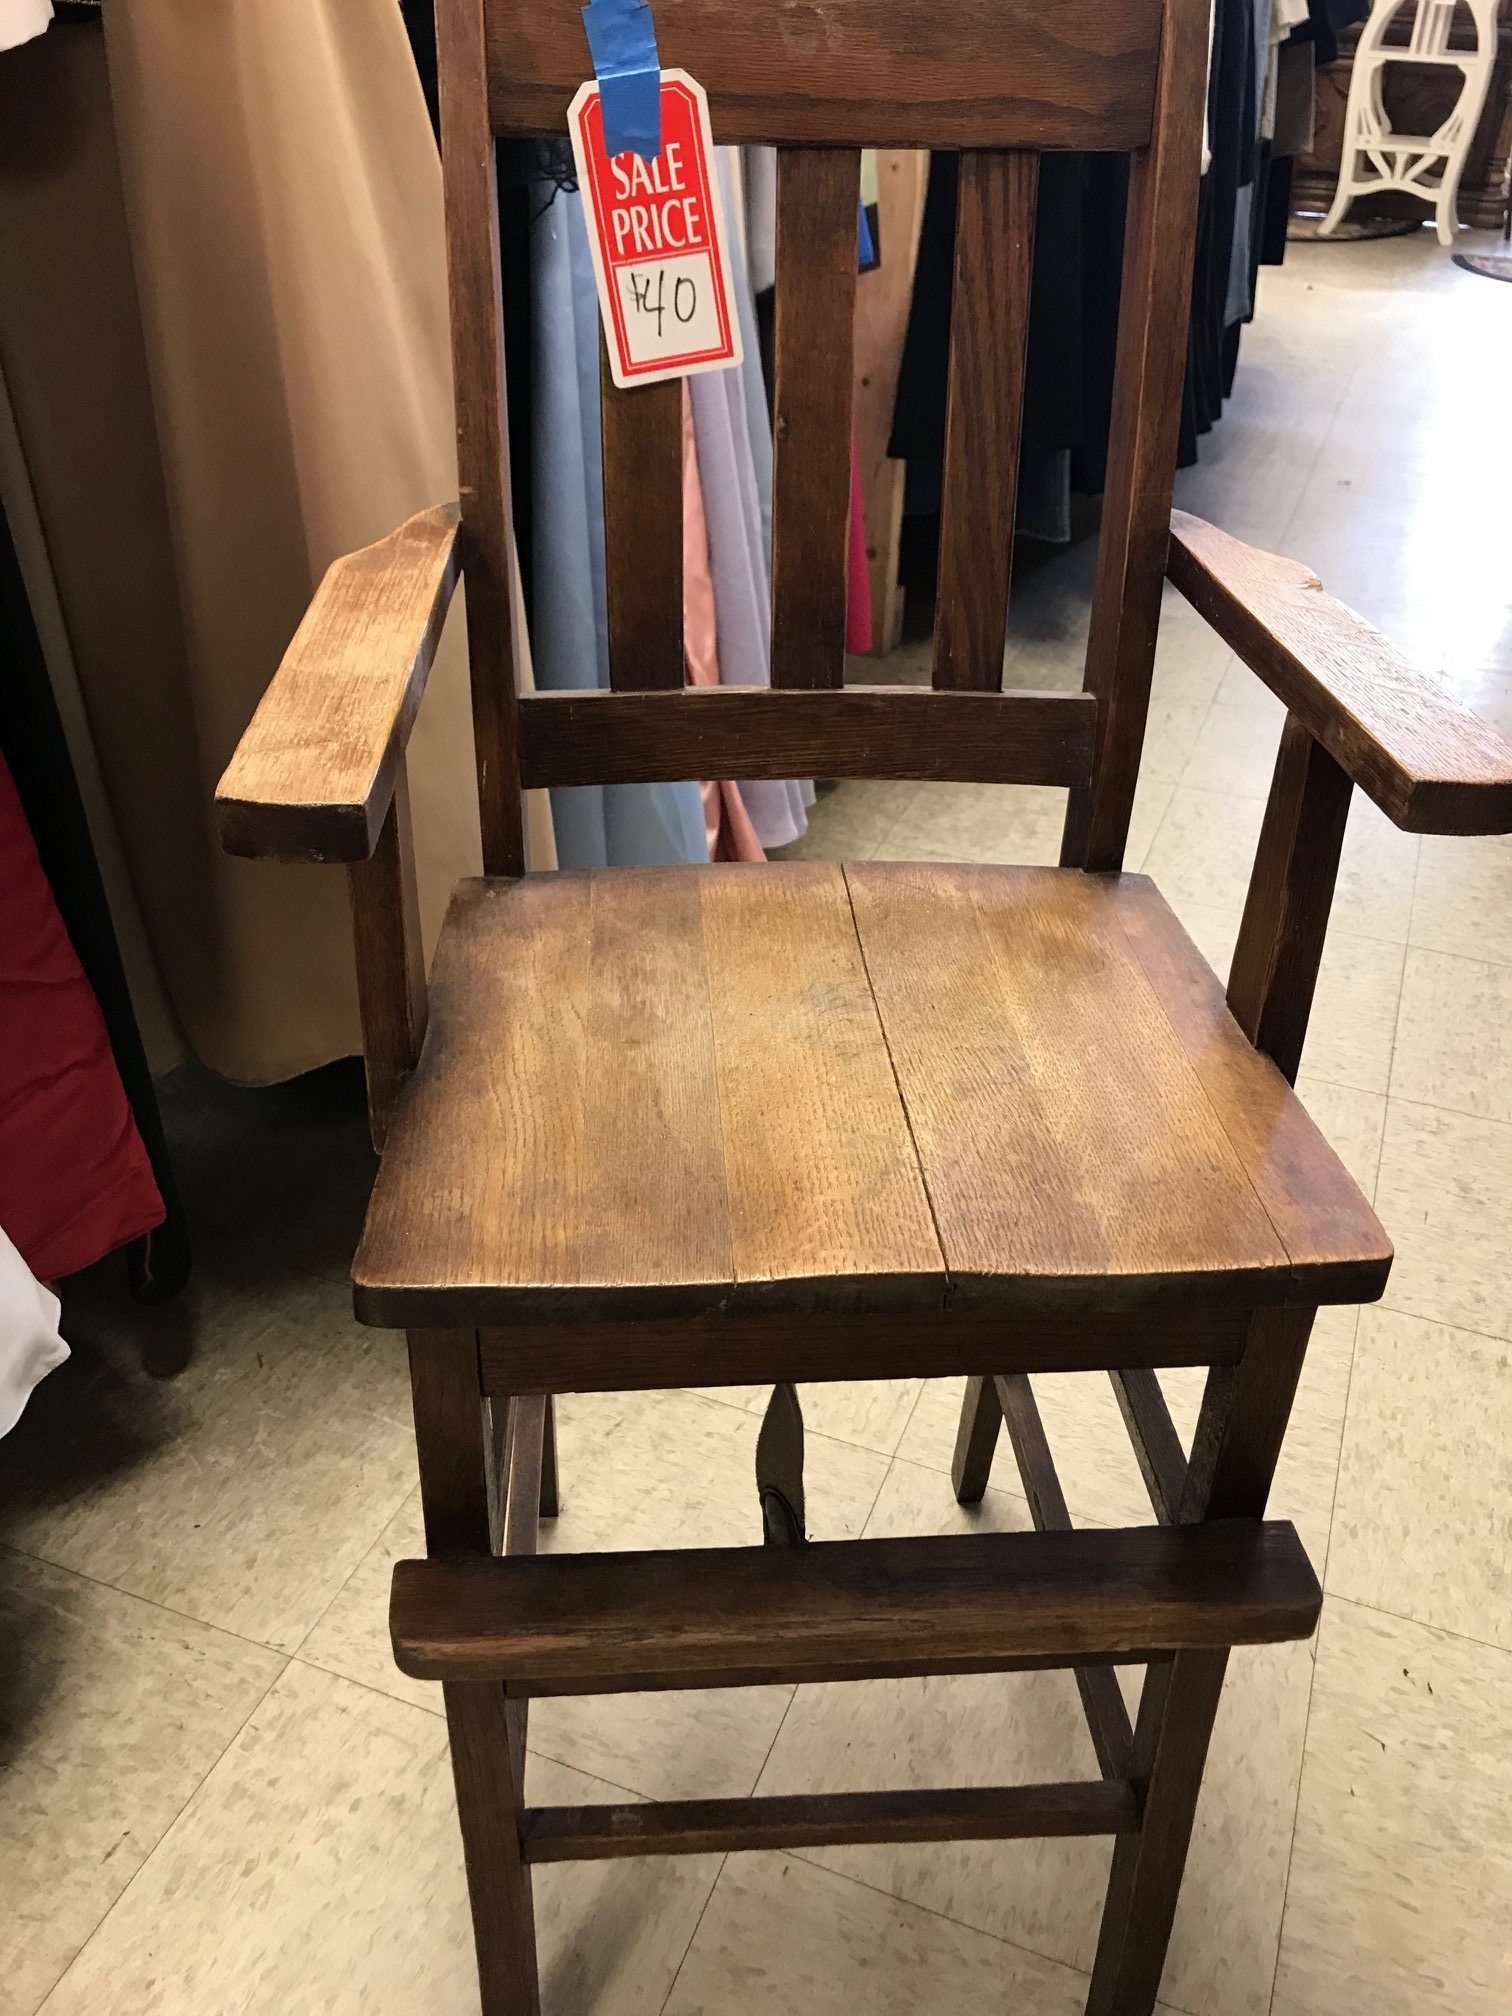 antique wooden high chair